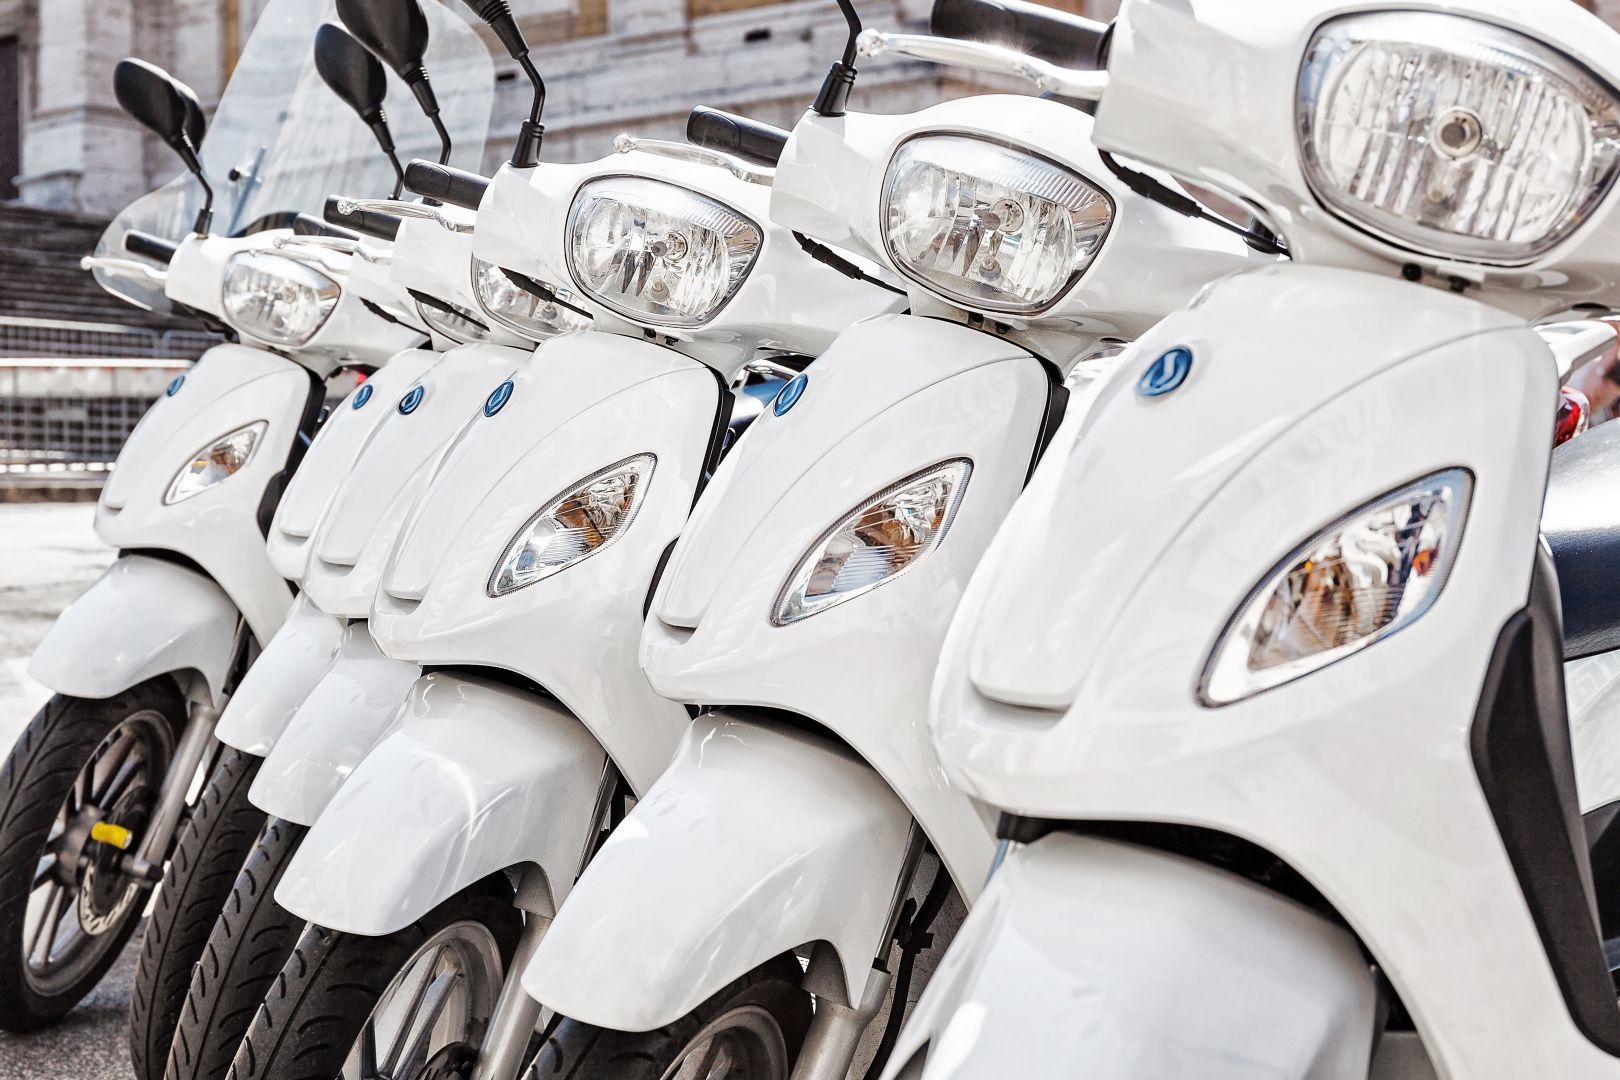 Zakázka na terénní čtyřkolky s pásy v provedení záchranné vozidlo HS (Motocykly, čtyřkolky) - Trutnov